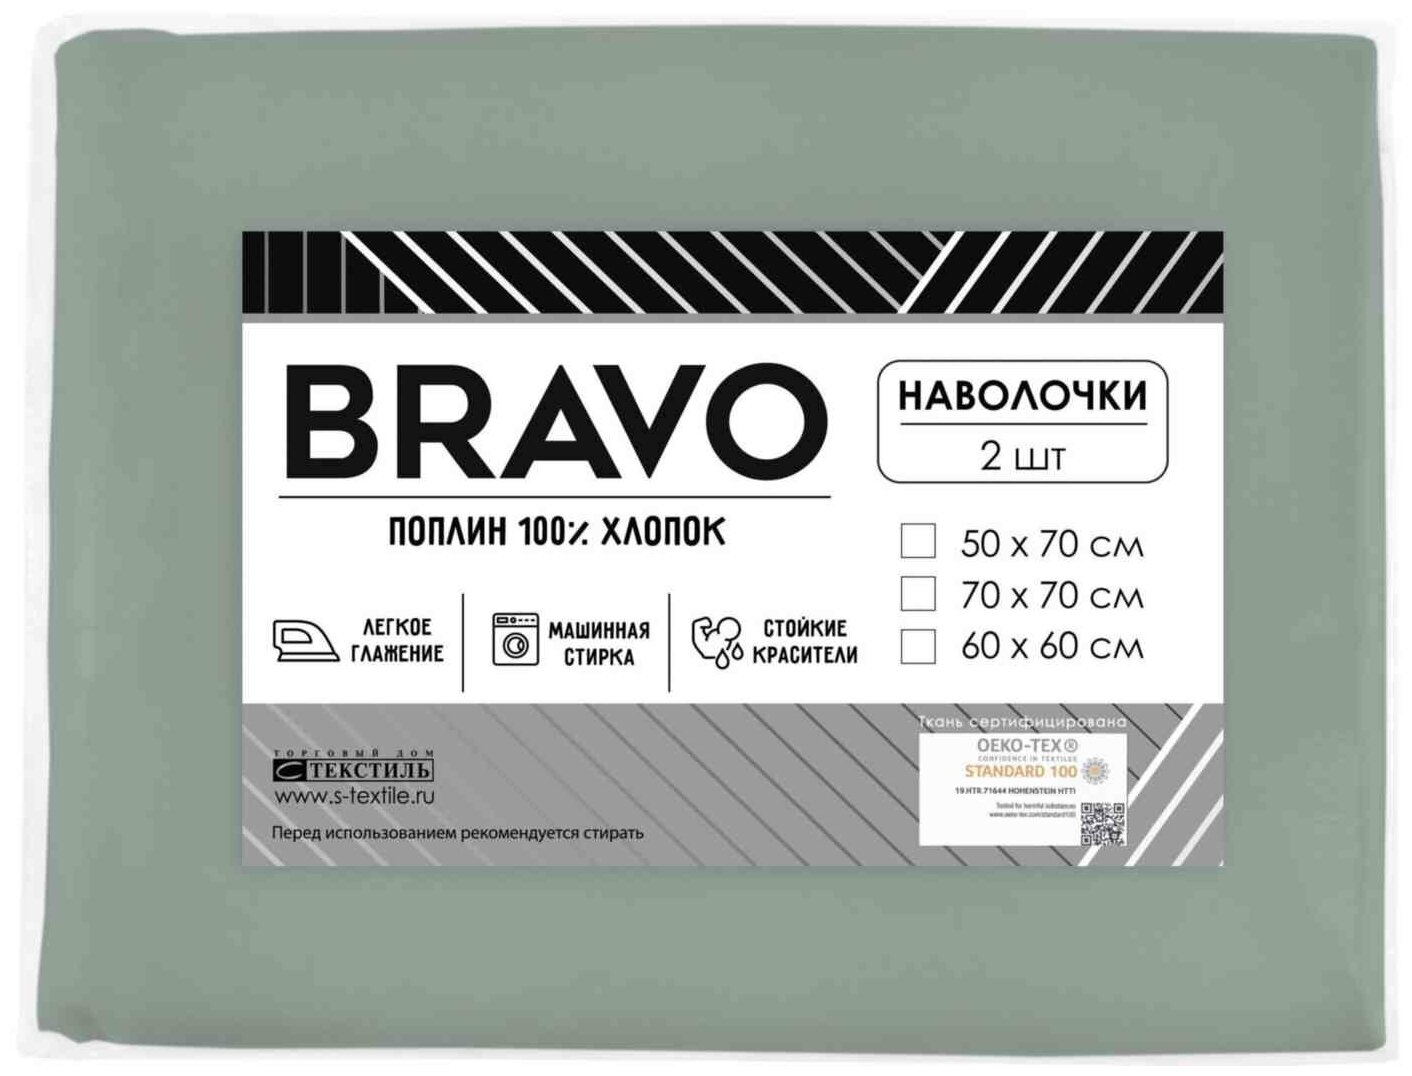 Комплект наволочек Bravo поплин цвет: зеленый, 70×70 см